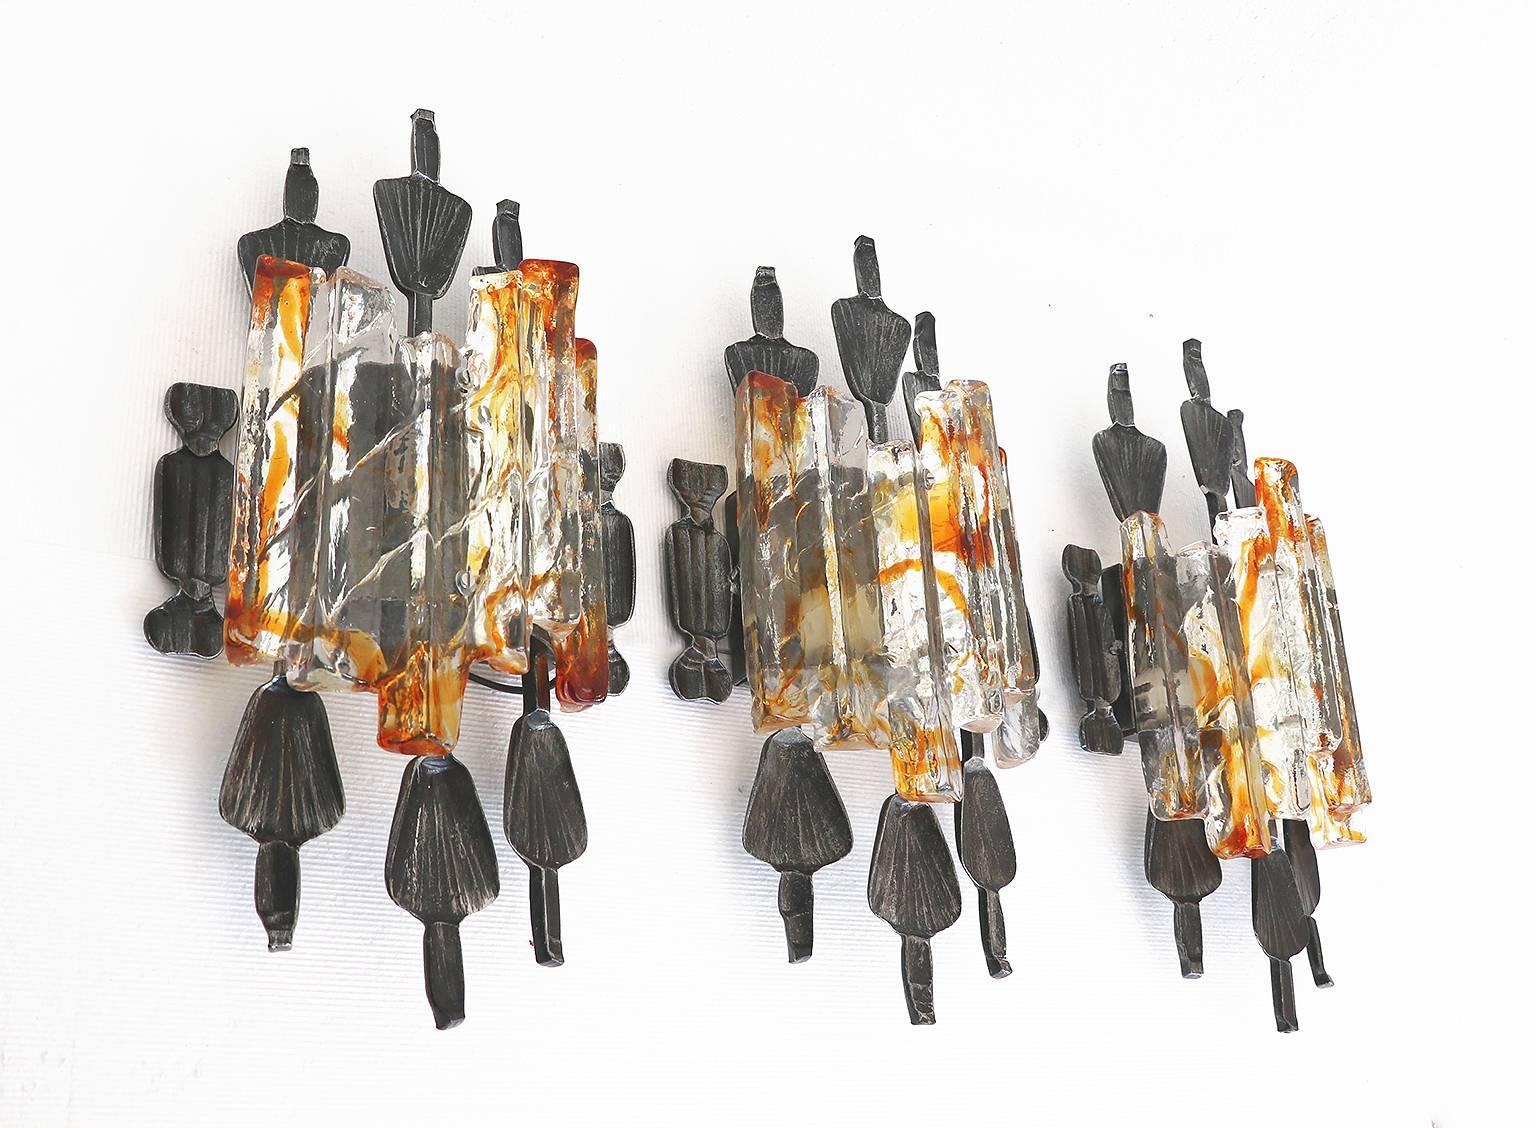 Elegantes Set aus drei brutalistischen Wandleuchtern mit klarem und bernsteinfarbenem Murano-Glas auf einem Metallrahmen. Entworfen von Tom Ahlström & Hans Ehrlich für A & E Design, Schweden in den 1960er Jahren.

Design: Tom Ahlstroem & Hans